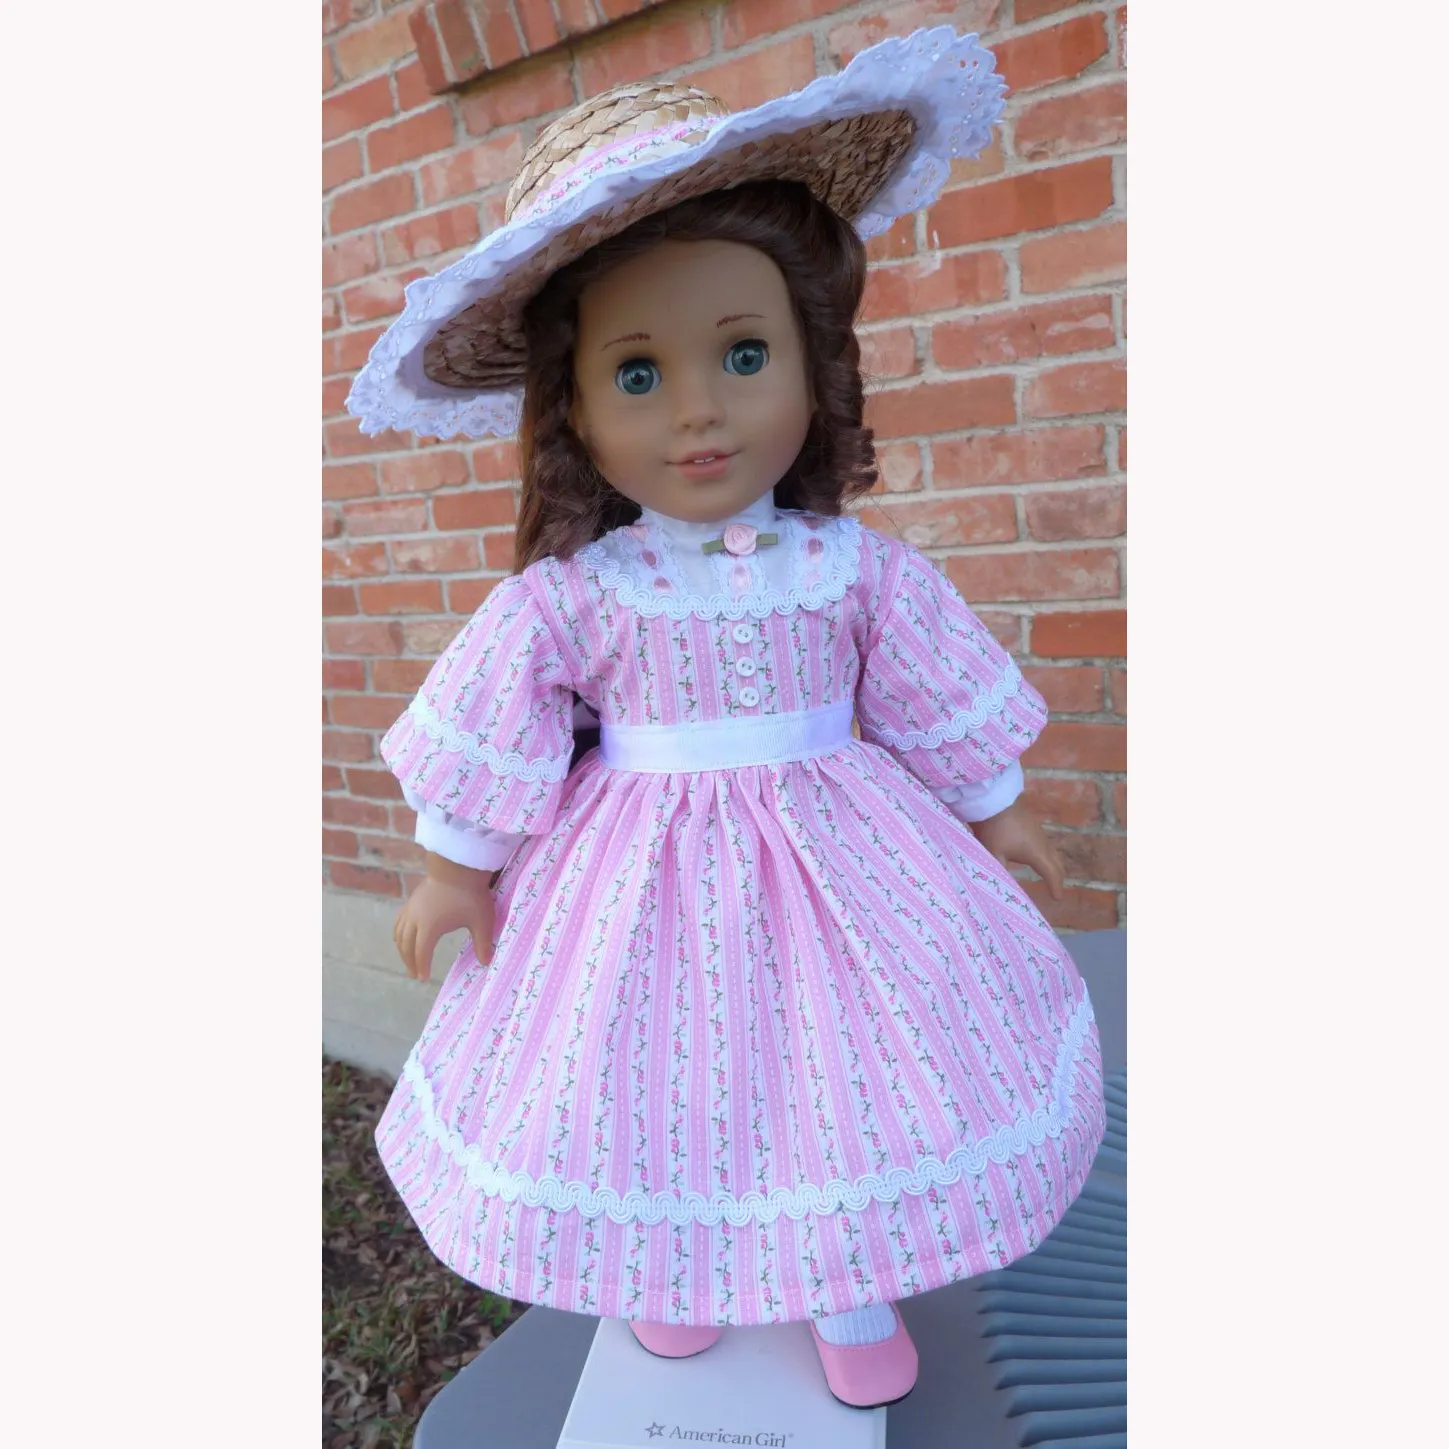 China fabricante de roupas por atacado personalizado roupa da boneca baby doll vestido roupa da boneca americana